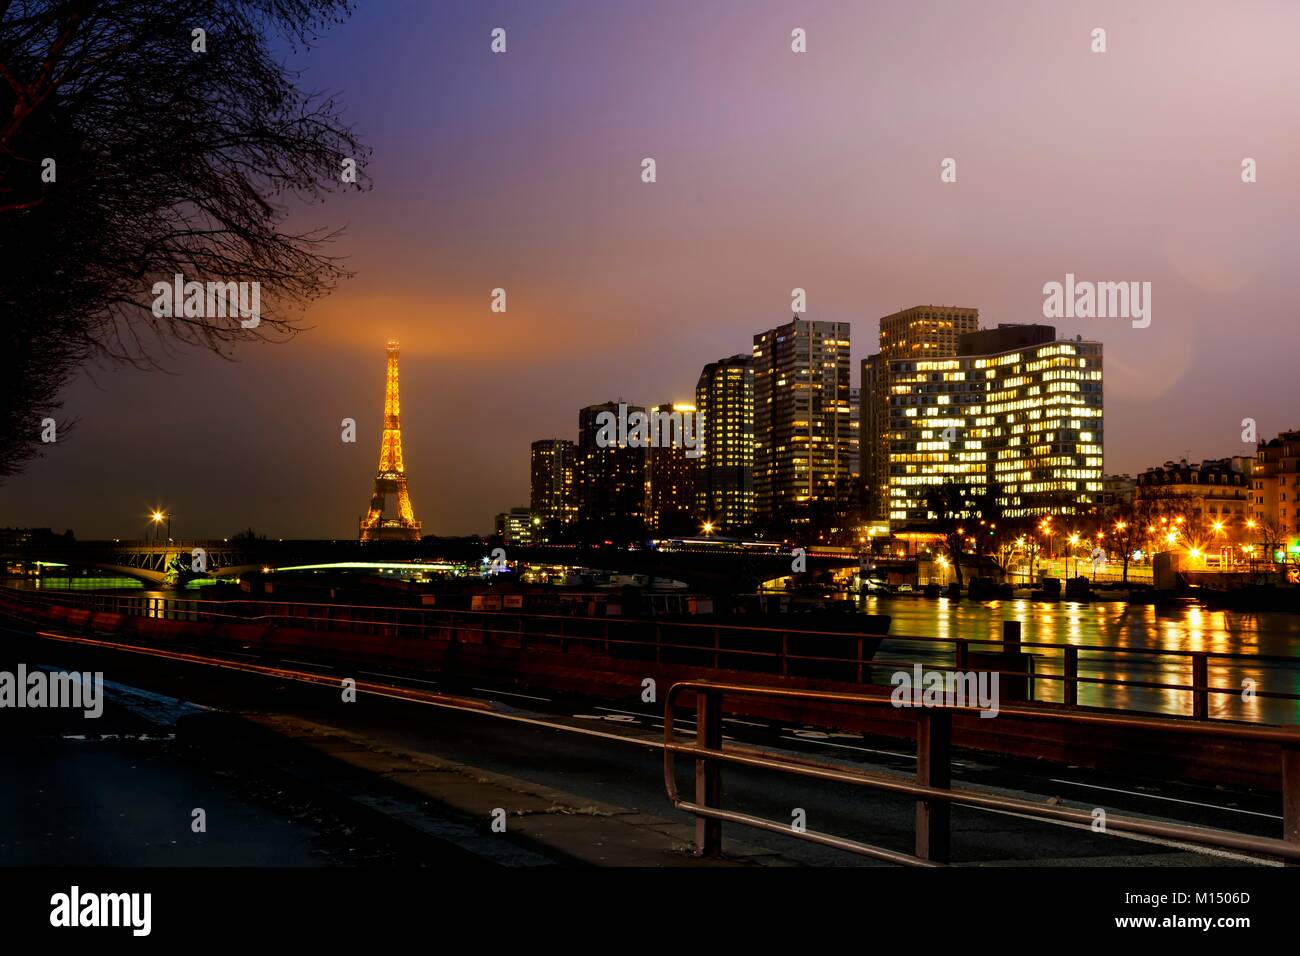 Vista panoramica del centro di Parigi di notte con riflessi sul Fiume Senna e illuminata la Torre Eiffel a distanza Foto Stock